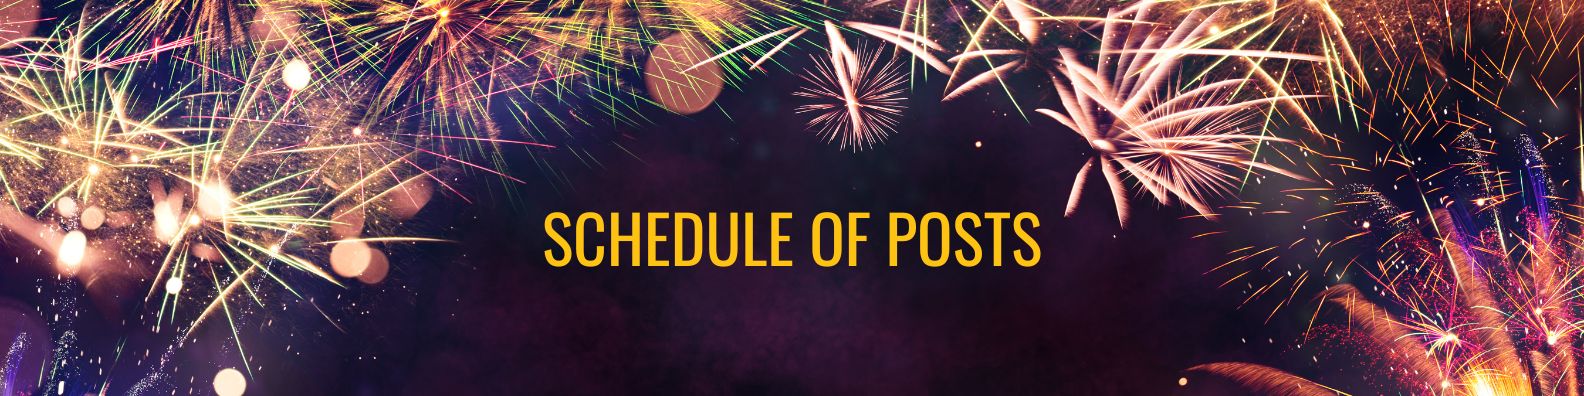 Schedule of Posts